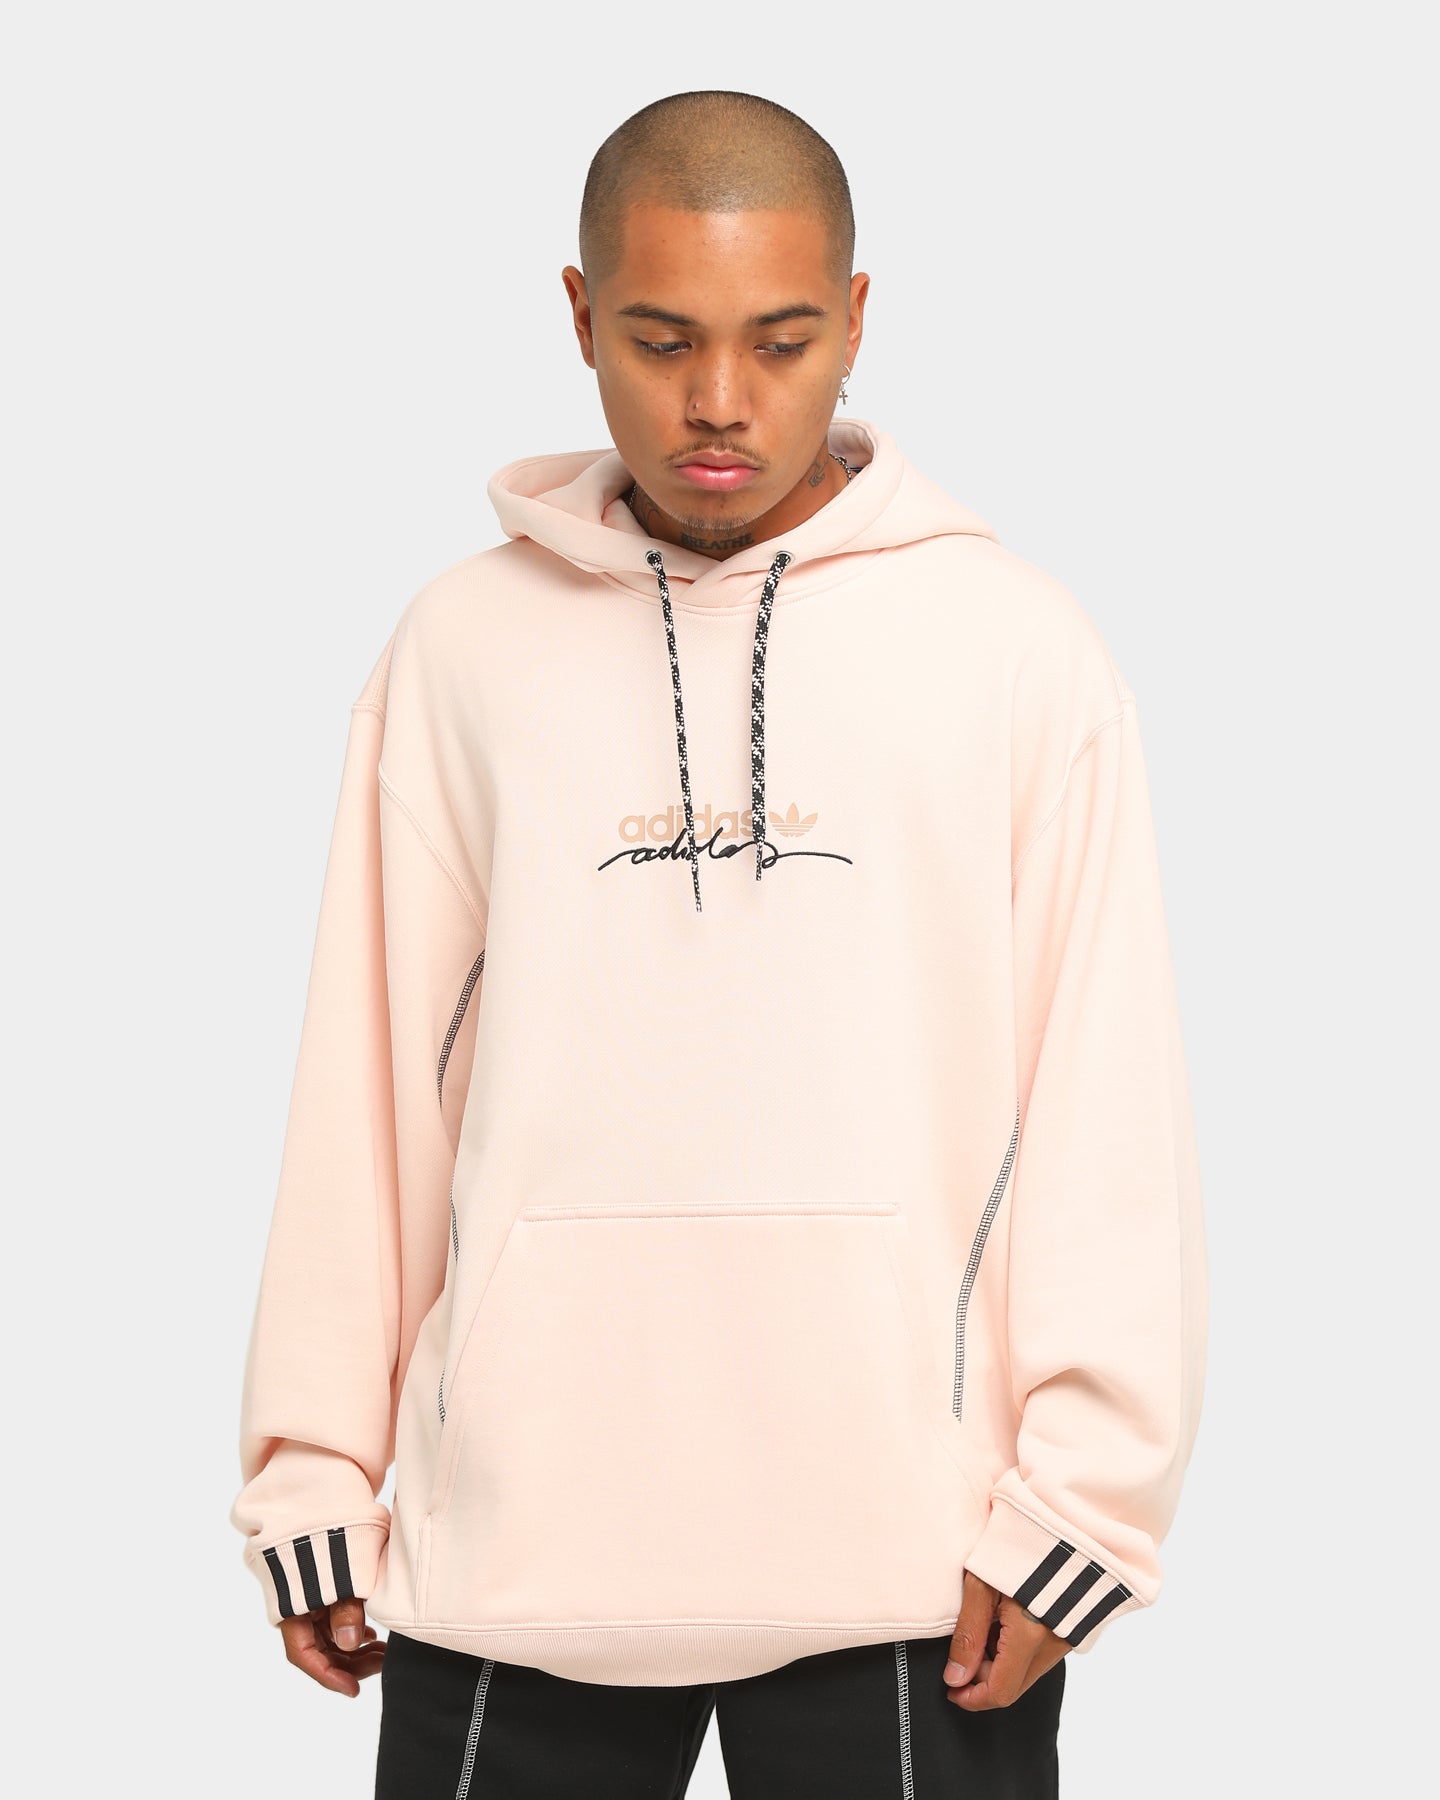 hoodie adidas pink